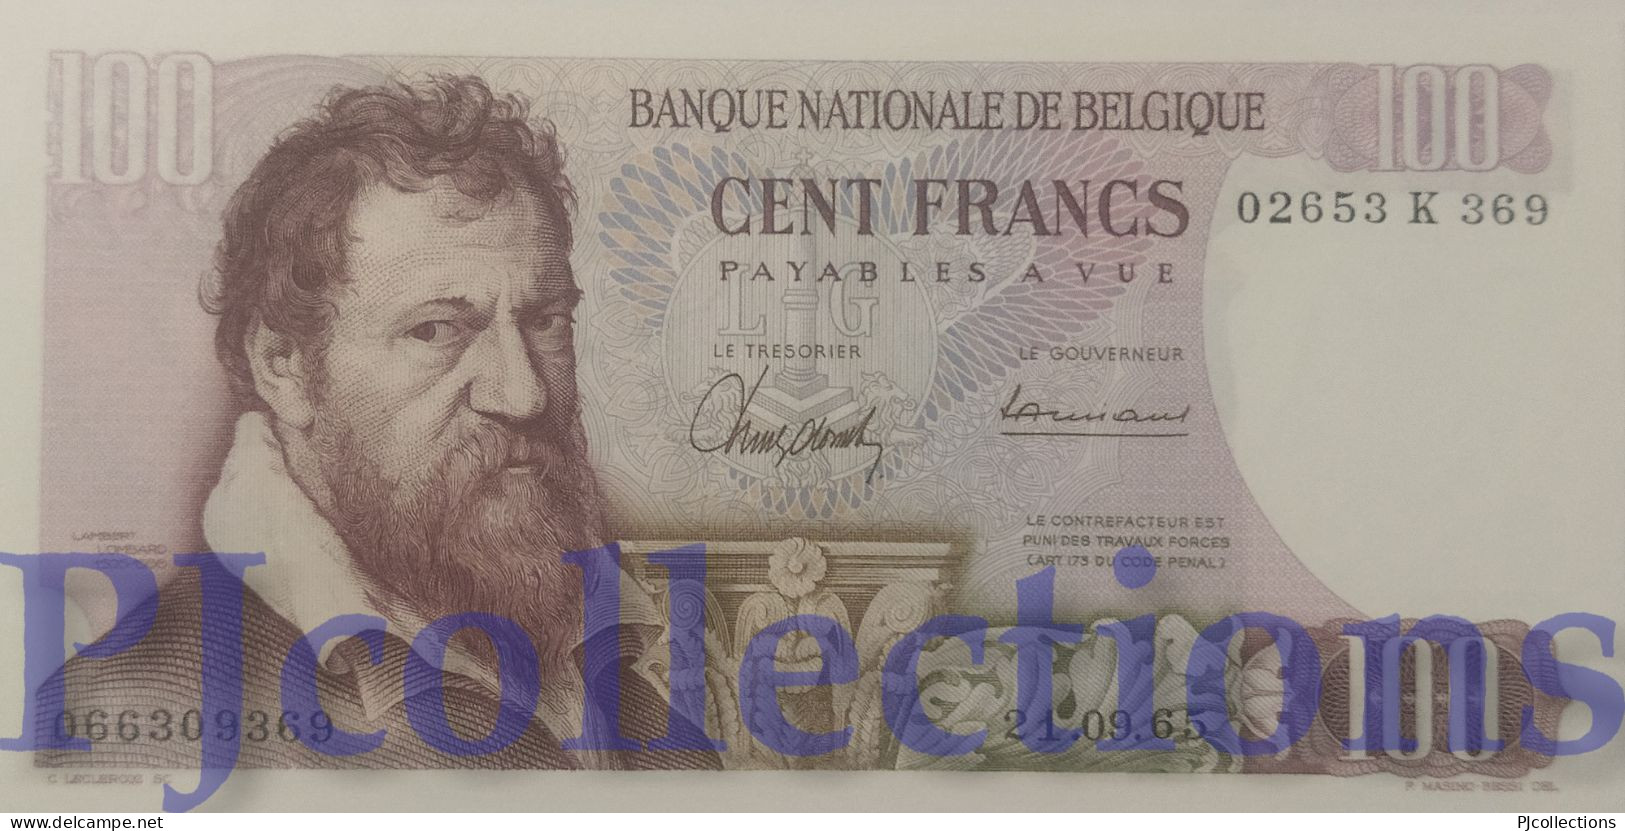 BELGIO - BELGIUM 100 FRANCS 1965 PICK 134a UNC - 100 Francs